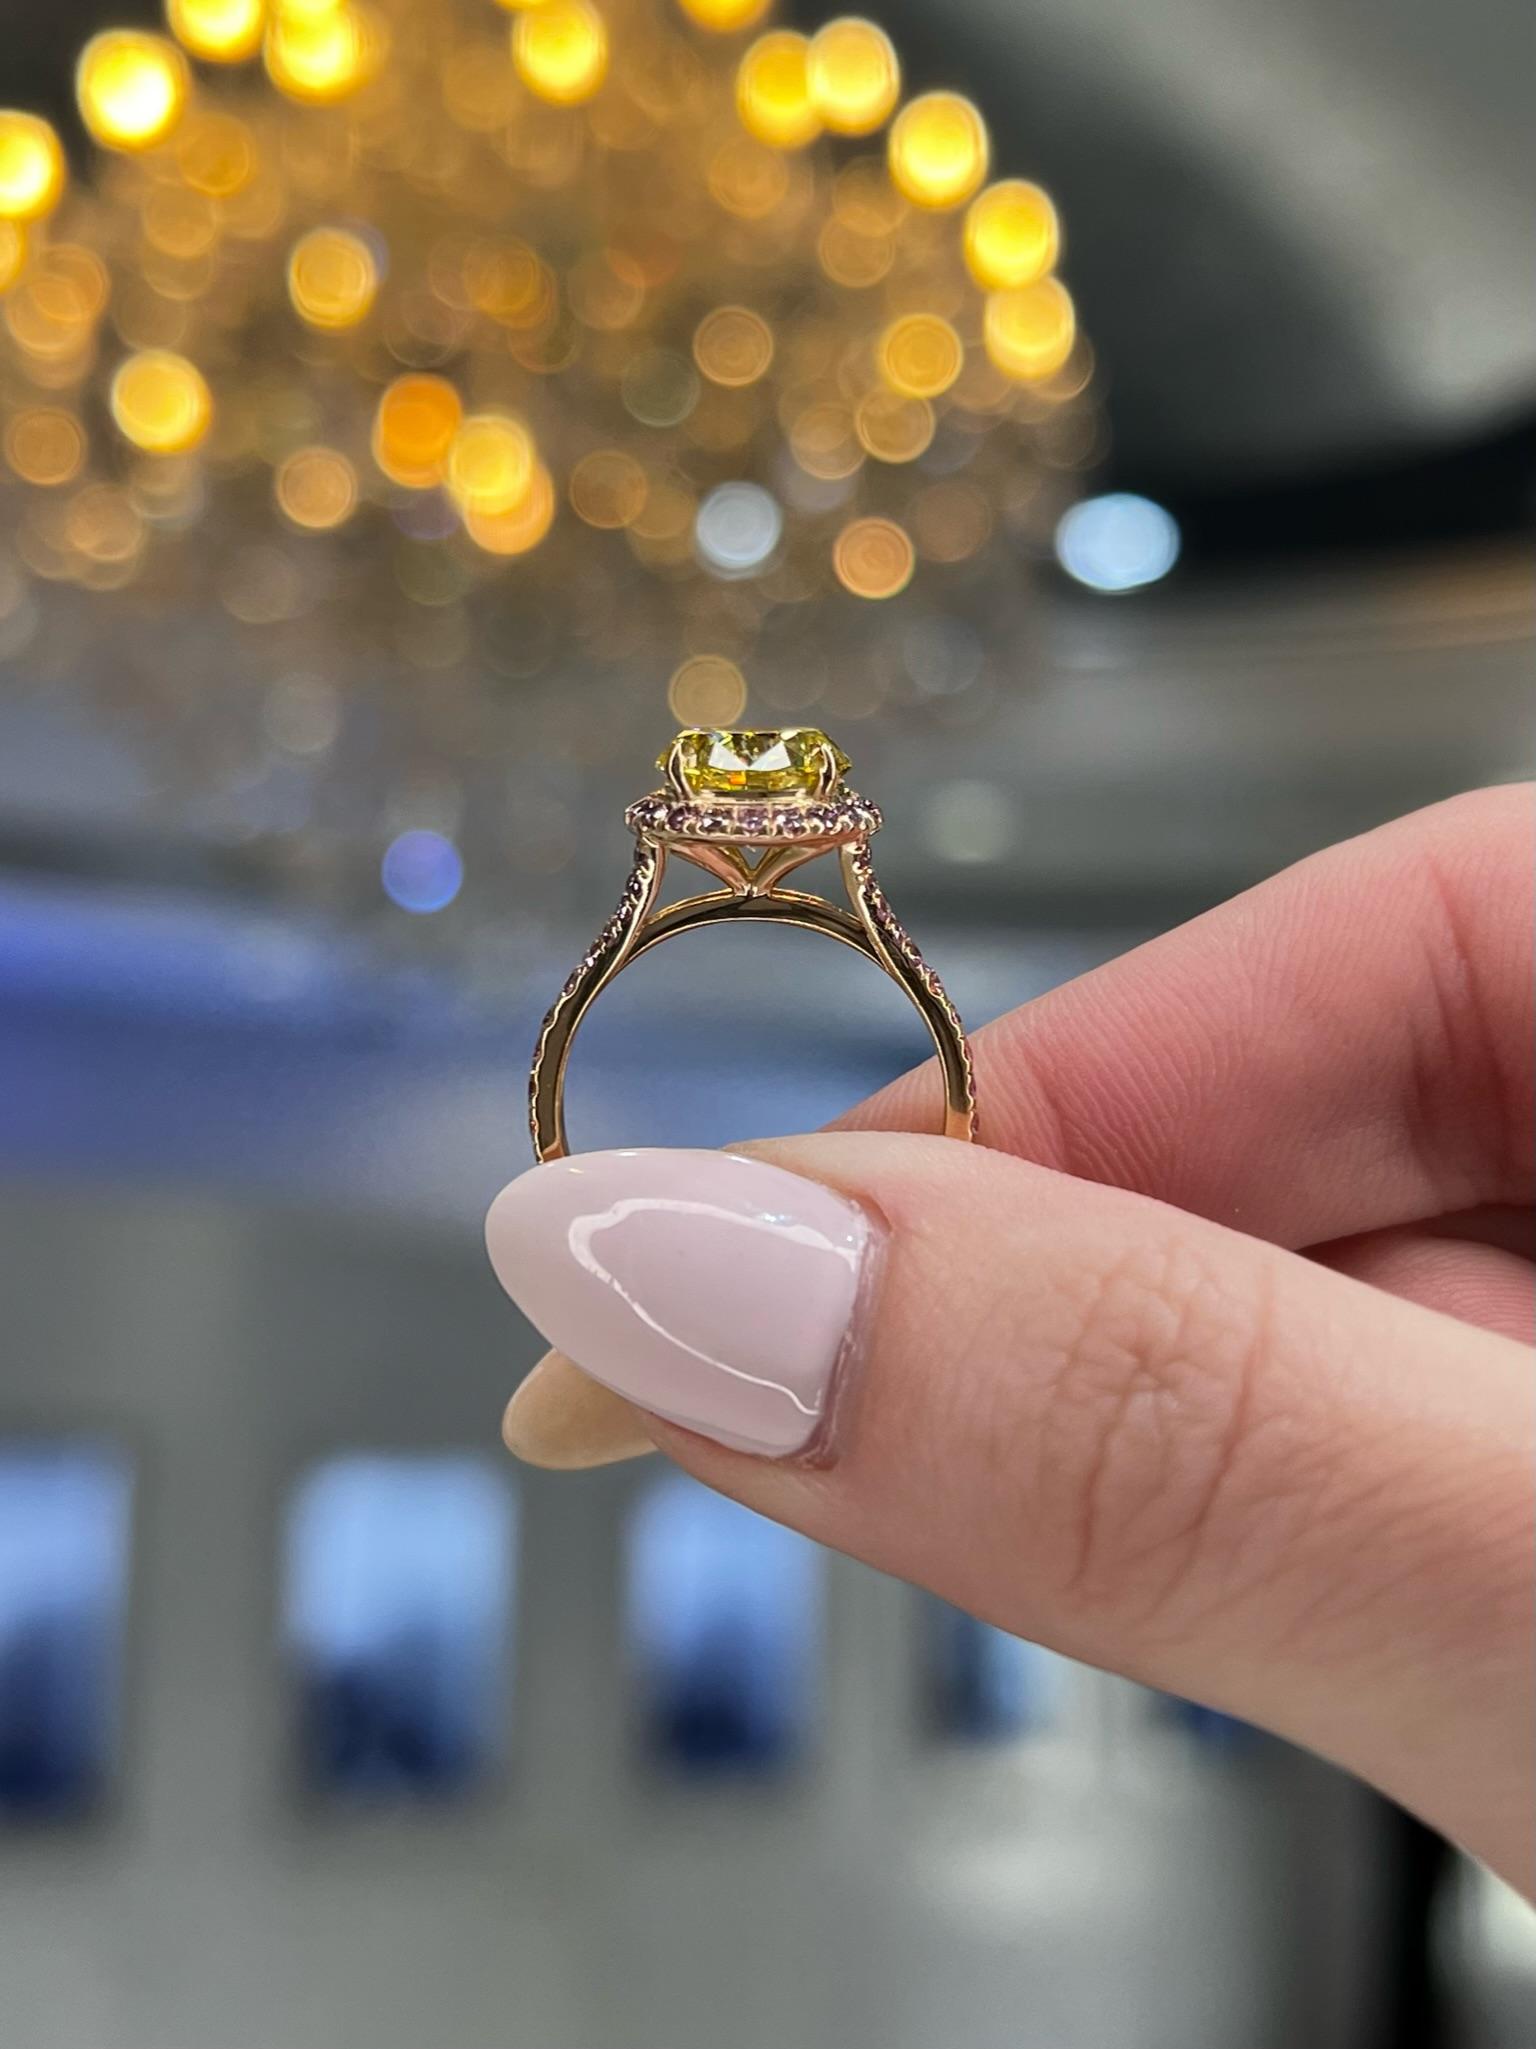 David Rosenberg 2.61 Carat Round Fancy Vivid Yellow GIA Diamond Engagement Ring For Sale 7